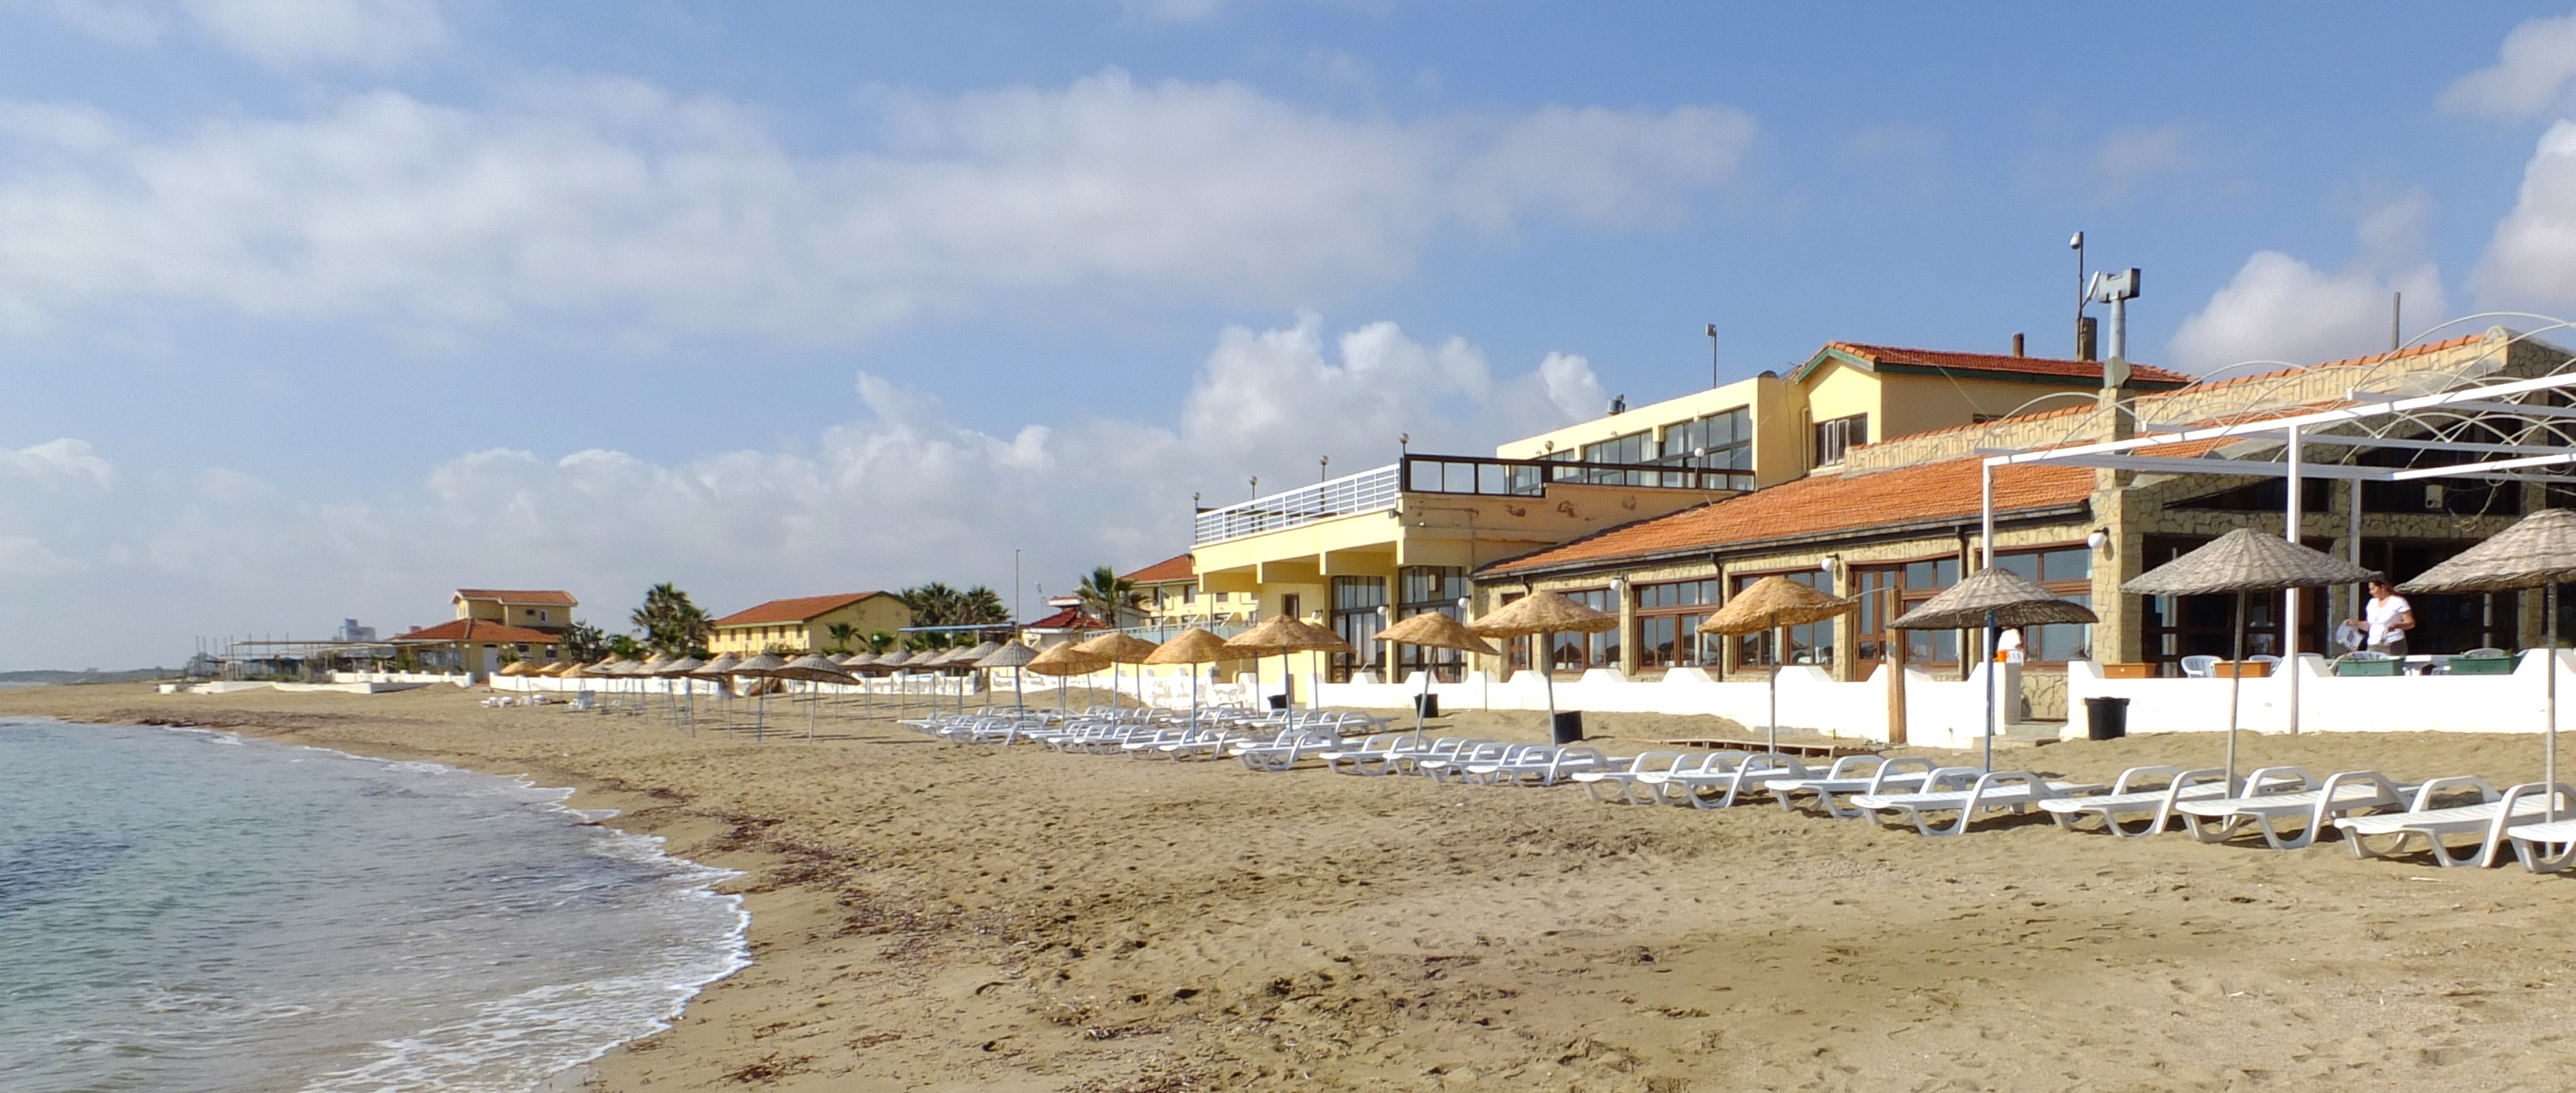 Strand und Gebude der Kocareis Bungalows - Nordzypern - Lupe Reisen